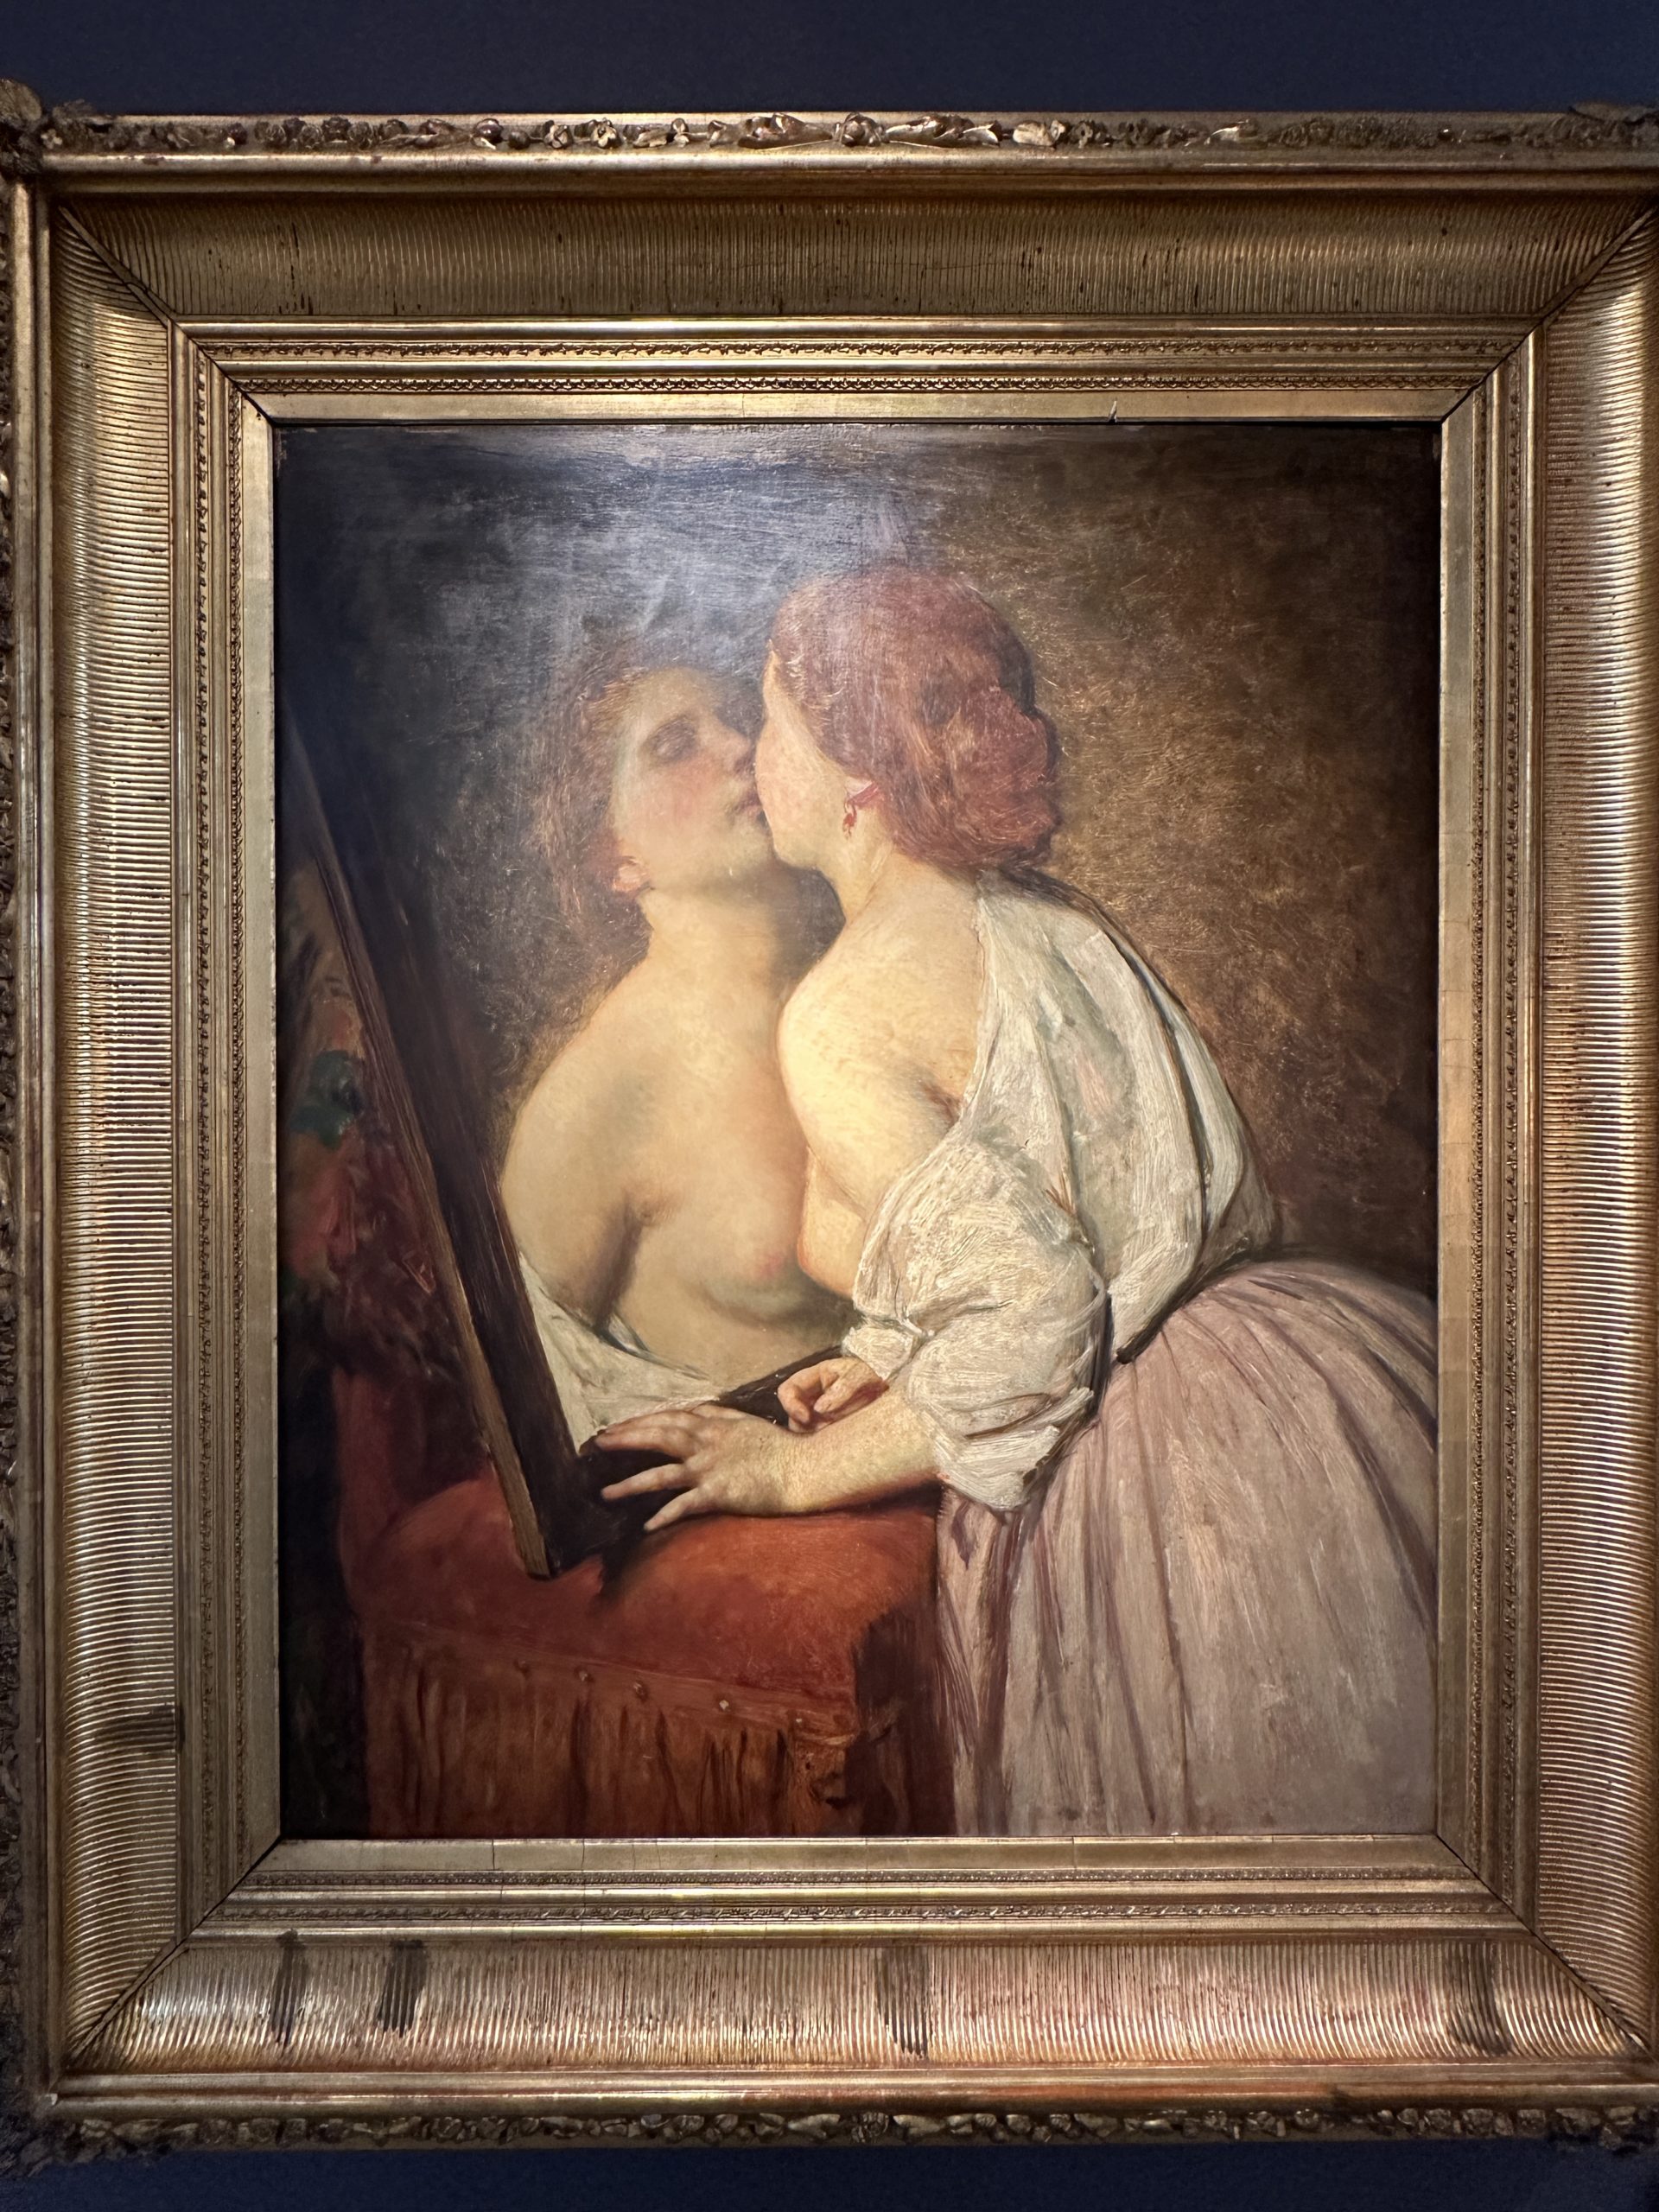 Joseph-Van-Lerius-ecole-begle-XIXe-romantisme-peinture-tableau-le-baiser-aurore-morisse-affaire-conclue-liege-paris-5